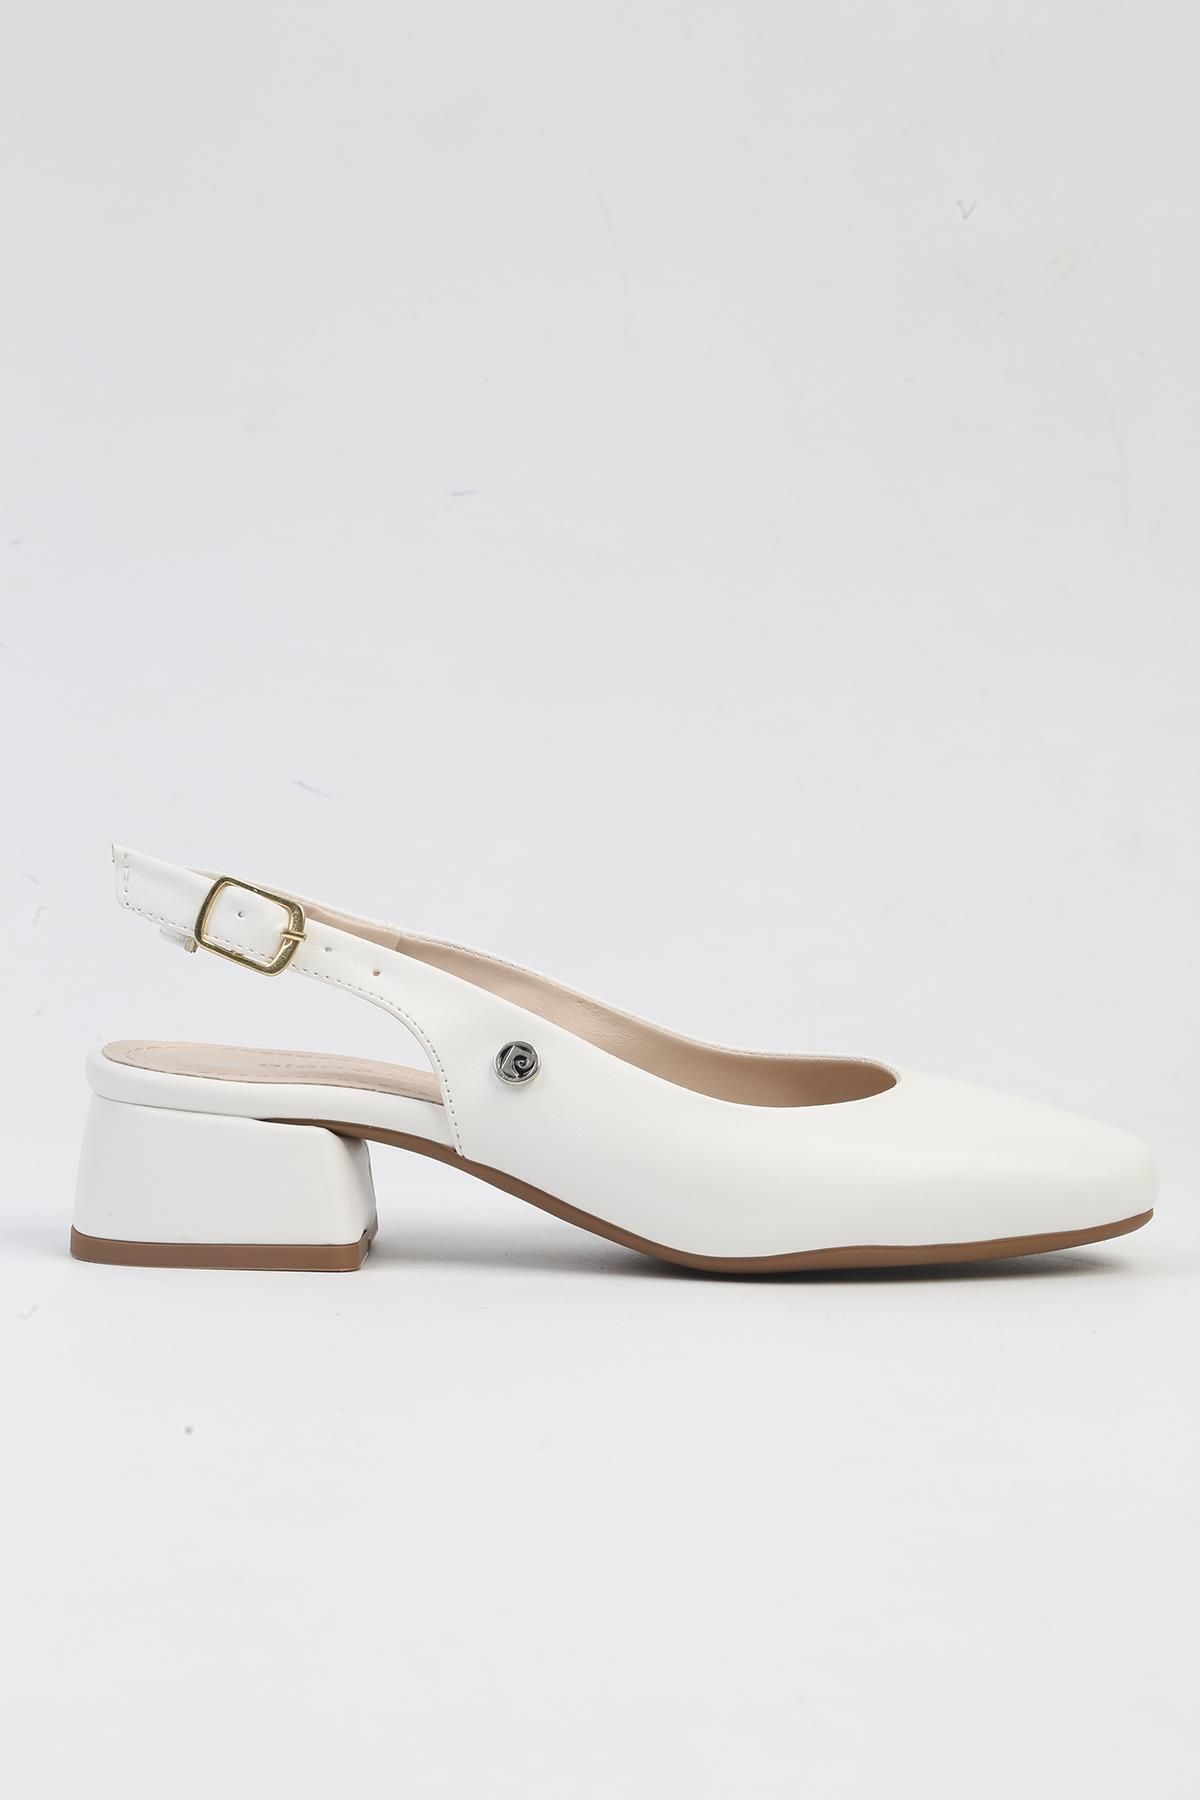 Pierre Cardin ® | PC-52272-3592 Beyaz-Kadın Topuklu Ayakkabı